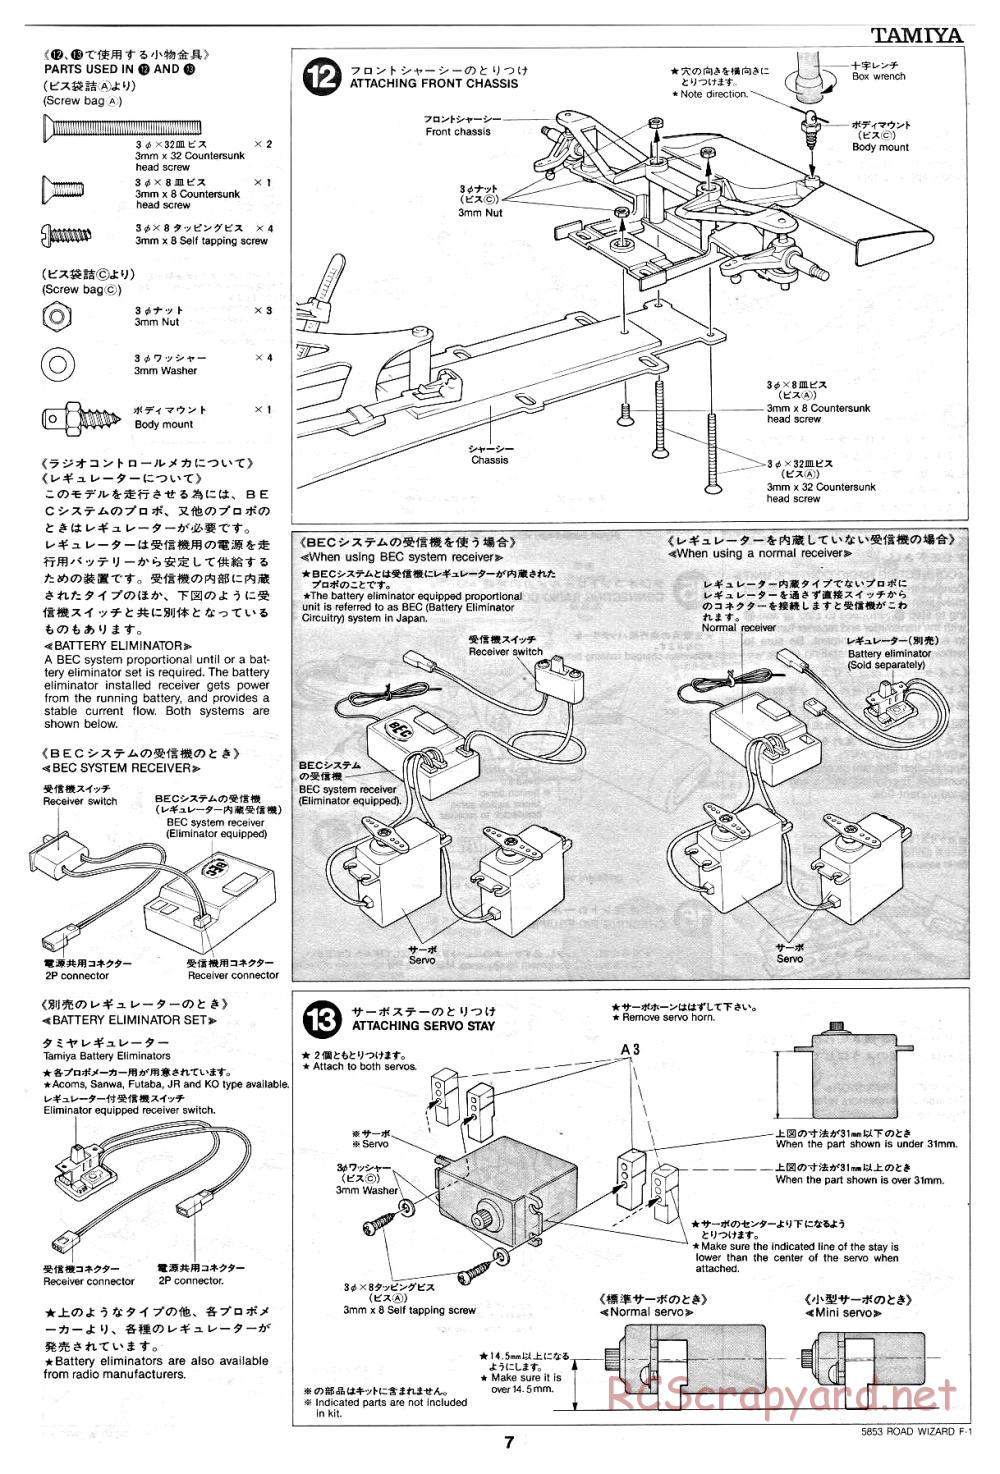 Tamiya - Road Wizard F-1 - 58053 - Manual - Page 7